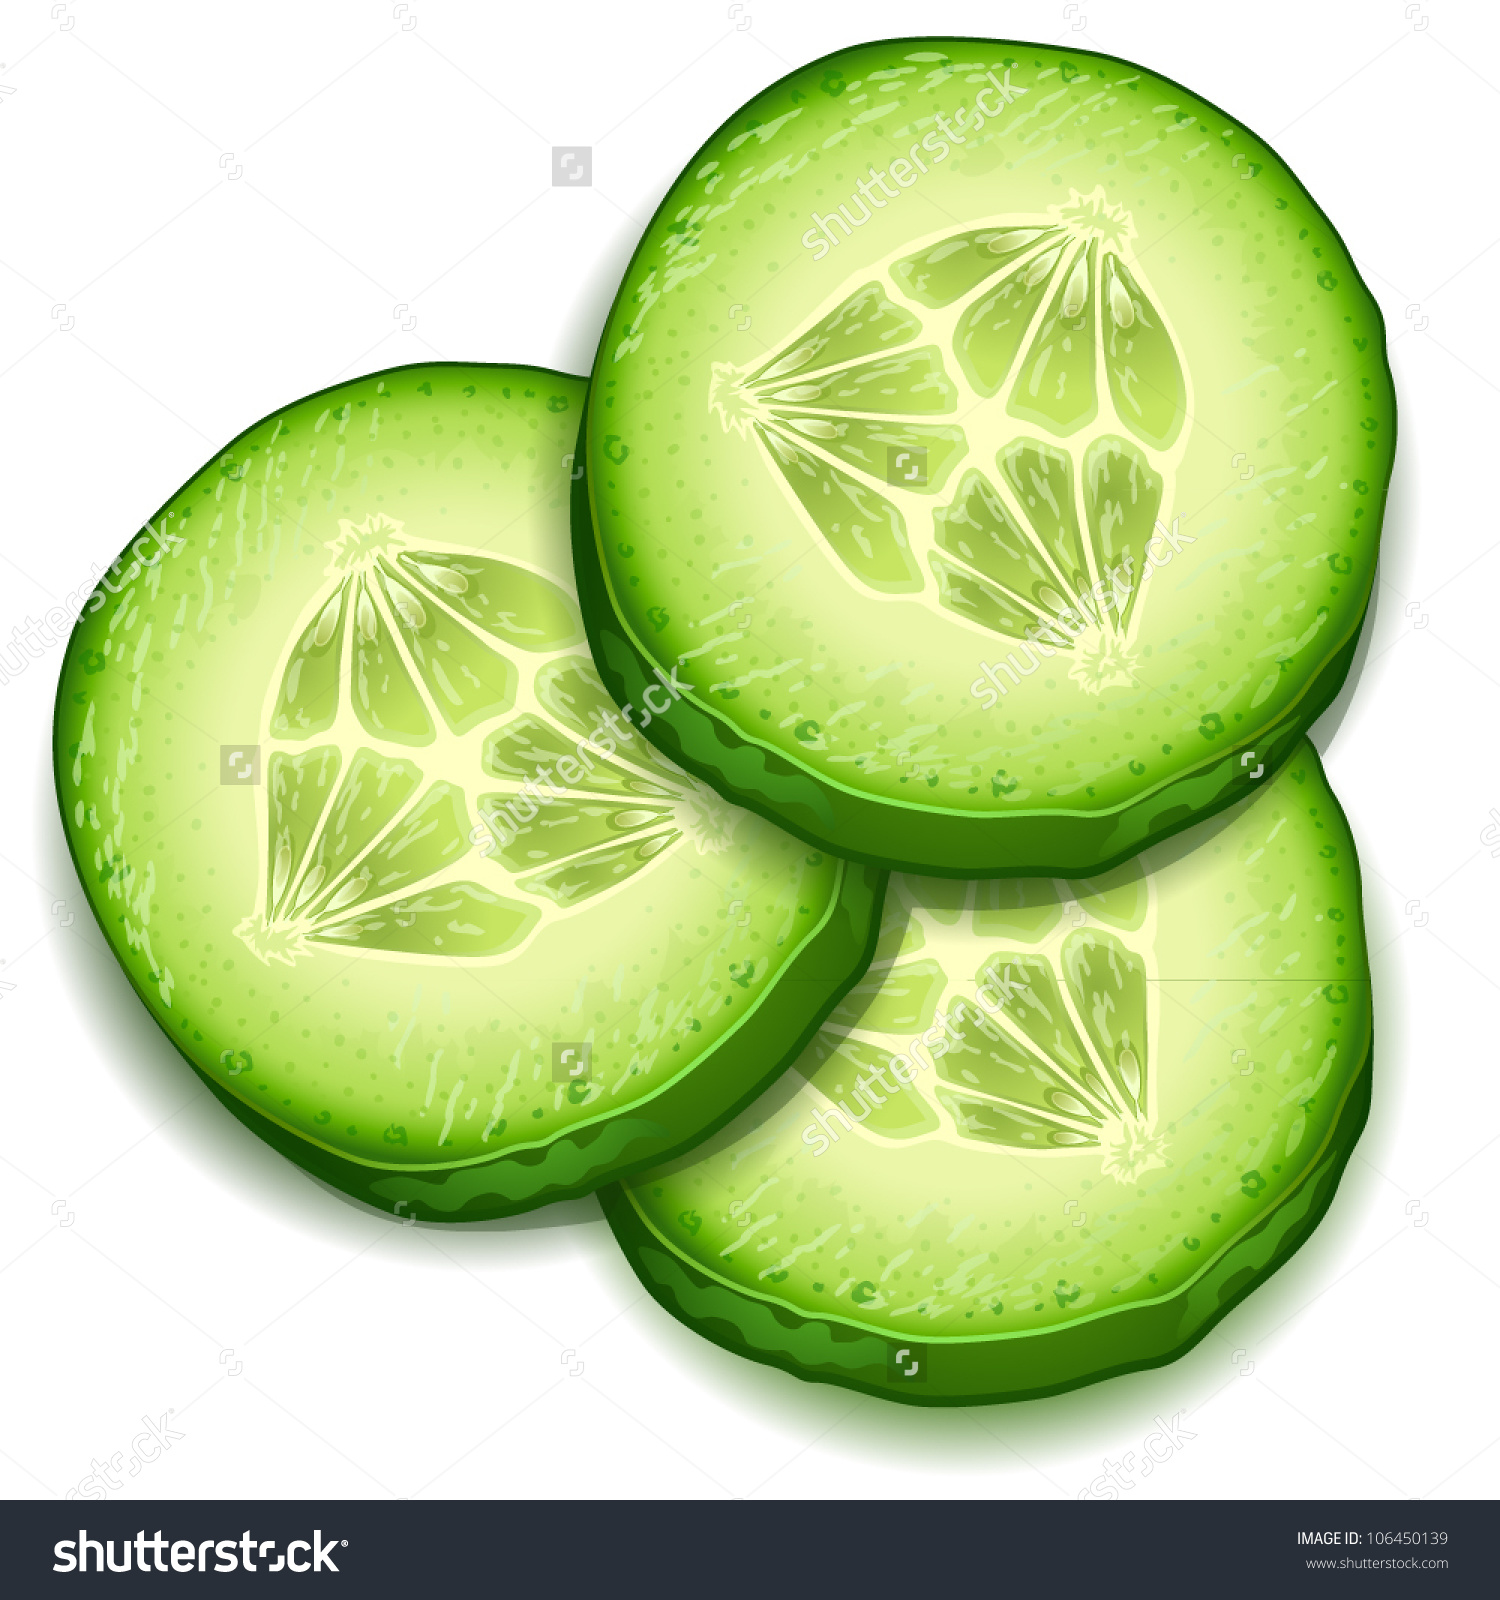 Cucumber clipart image web. C